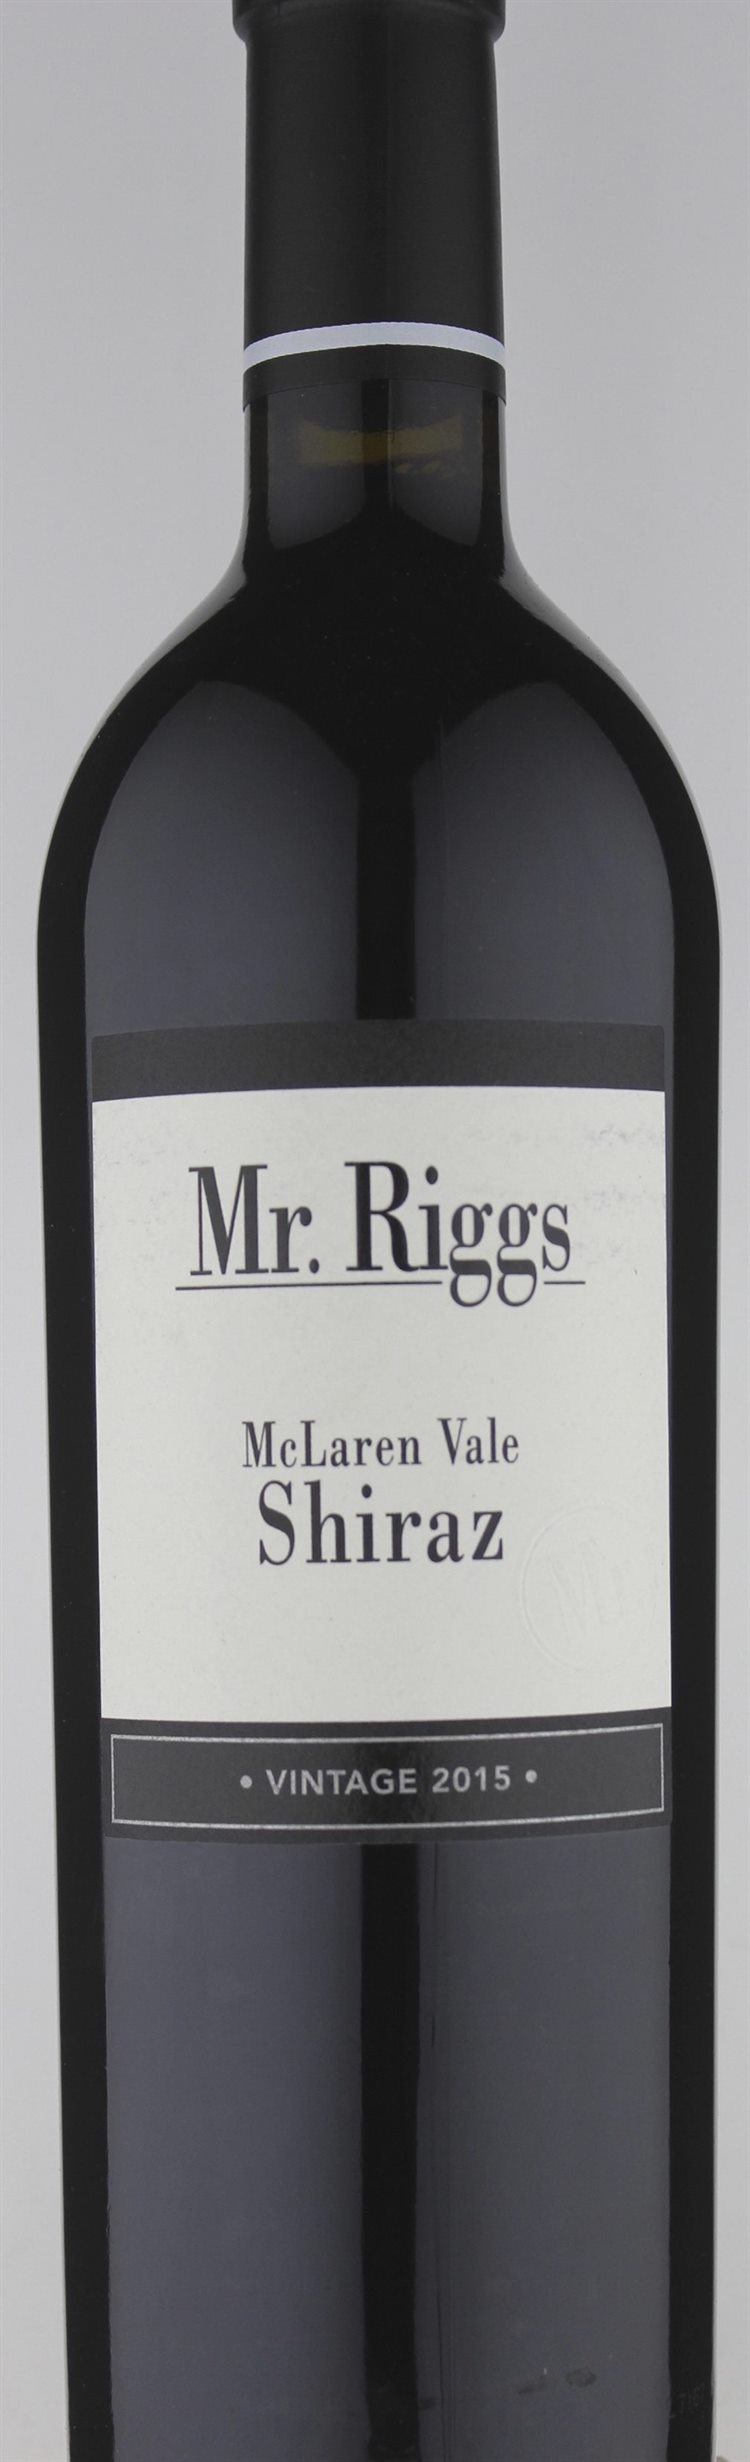 Mr. Riggs Mc Laren Vale Shiraz 2015